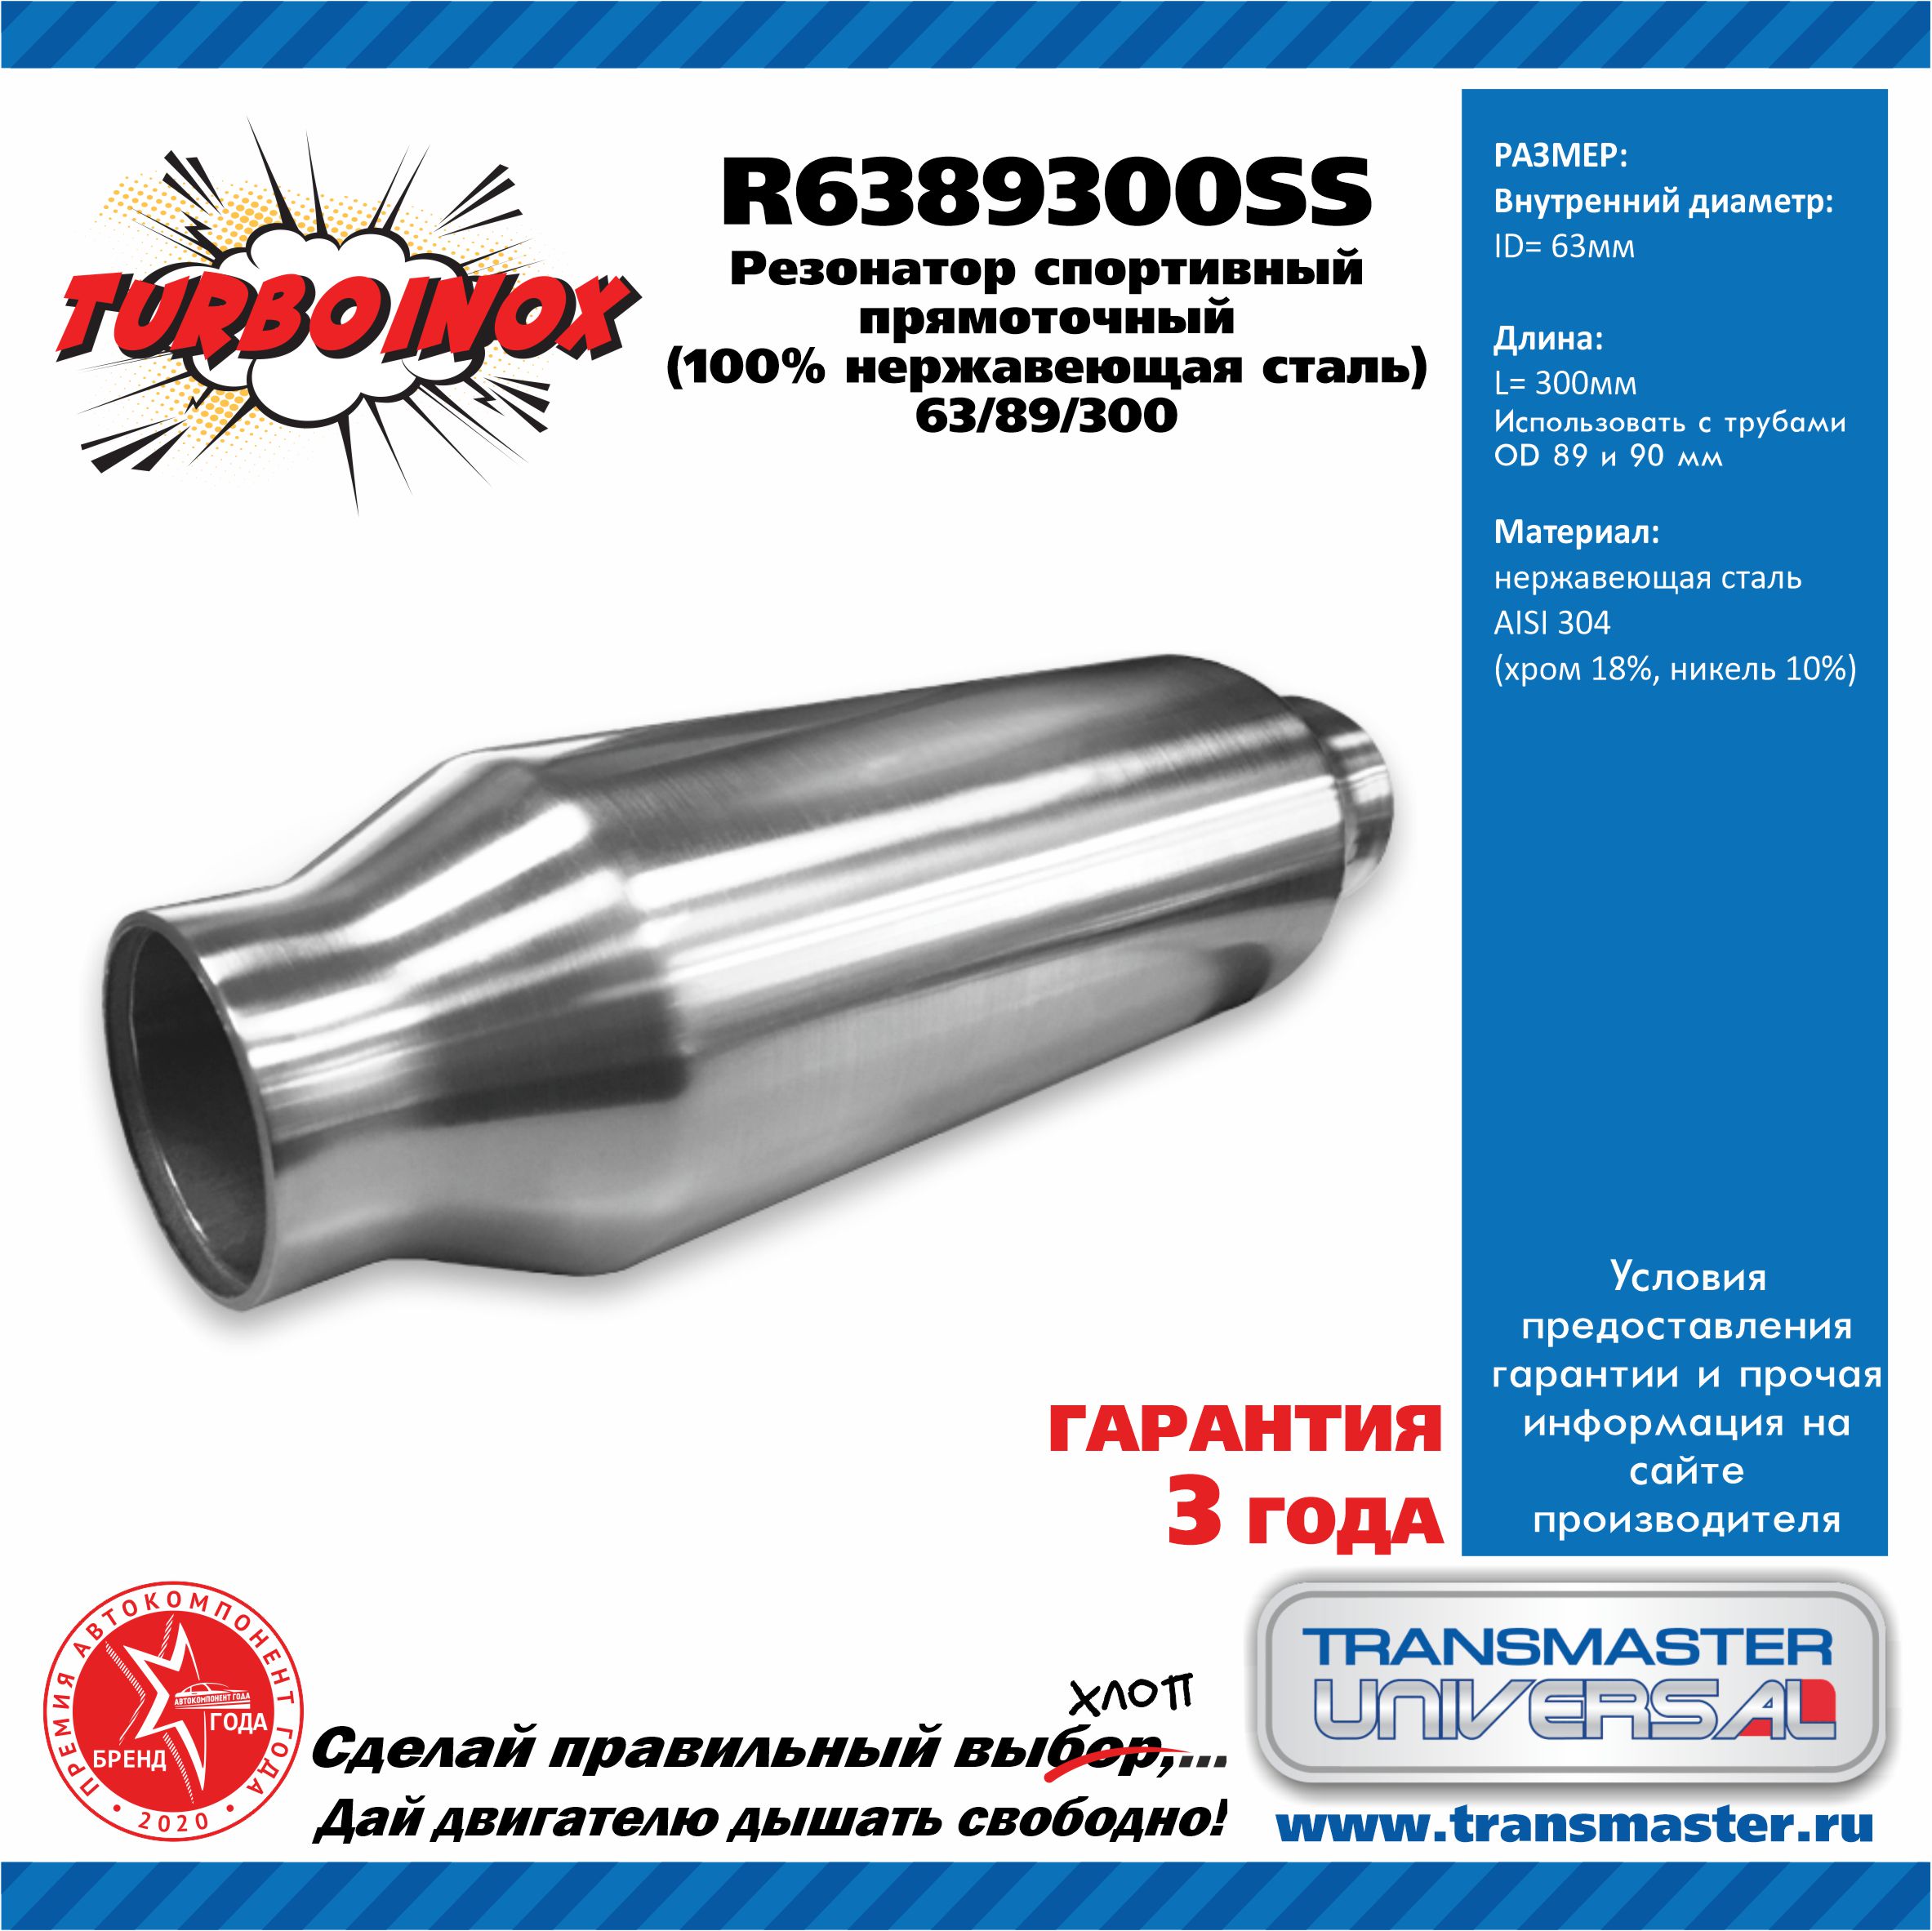 Резонатор спортивный прямоточный серия turboinox (100% нержавеющая сталь) - TRANSMASTER UNIVERSAL R6389300SS